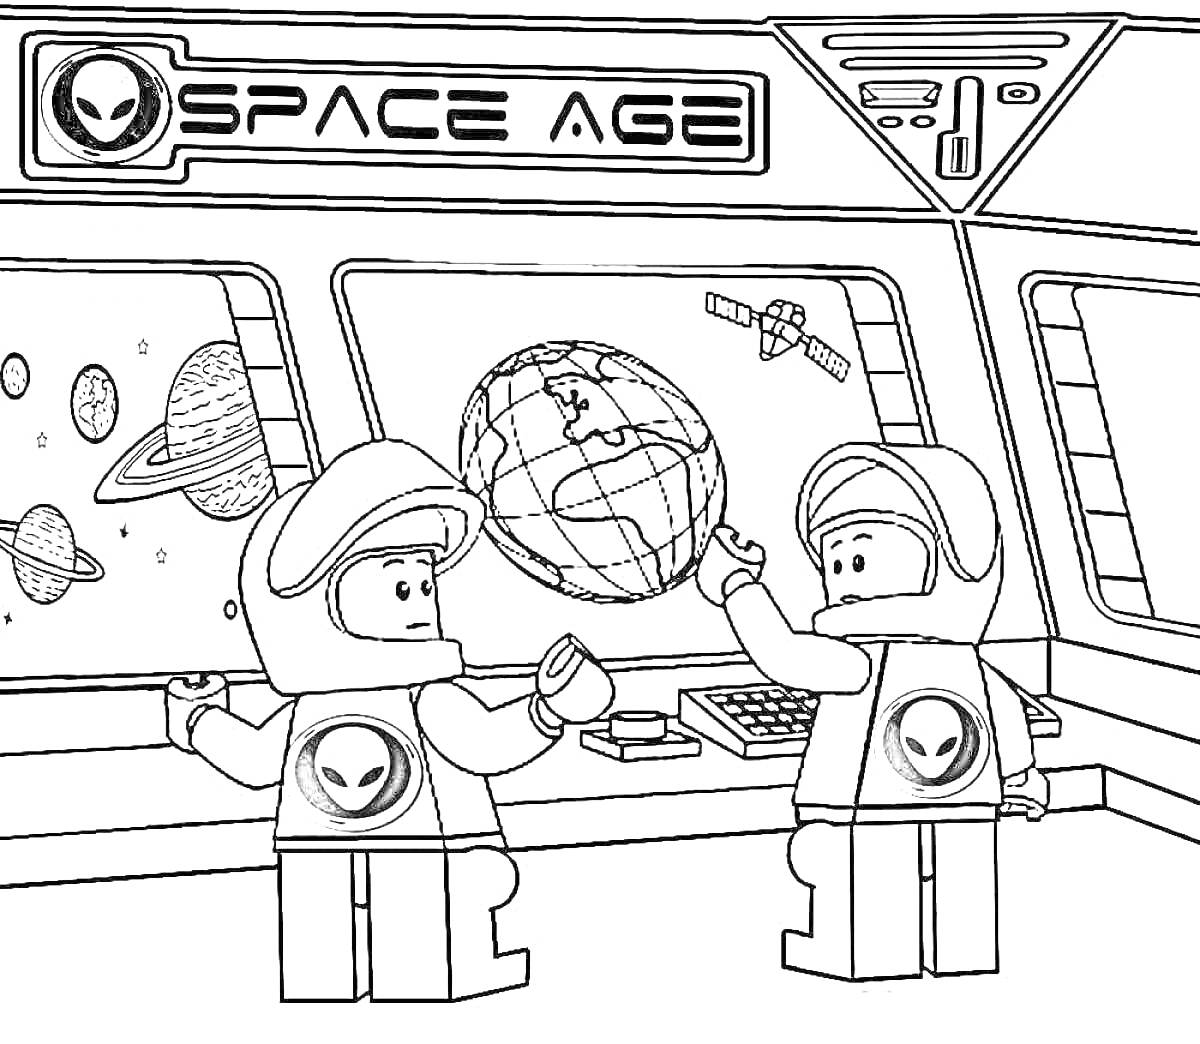 Лего космическая станция с инопланетянами, двумя космонавтами и изображением планет